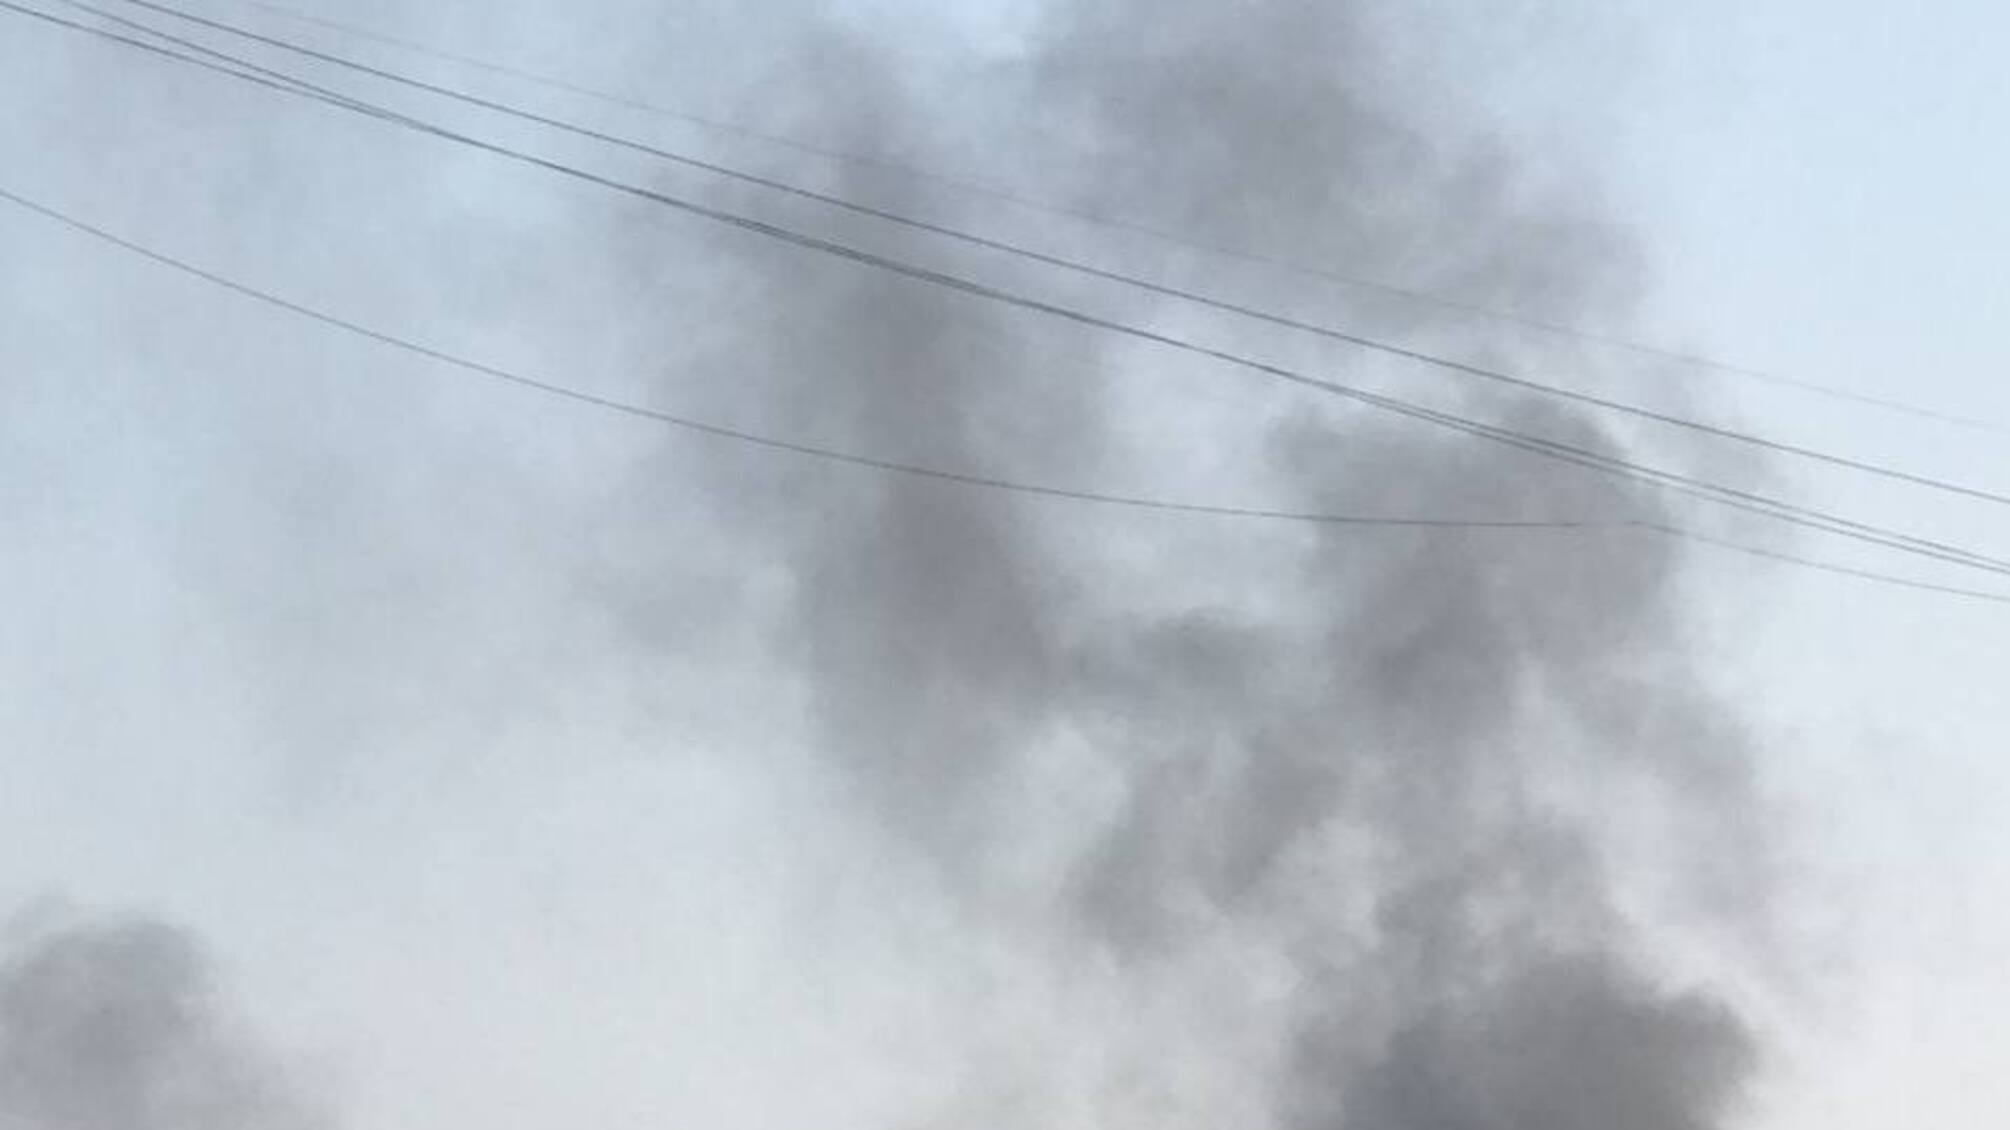 Харків – відбулось кілька вибухів, над одним з районів – дим